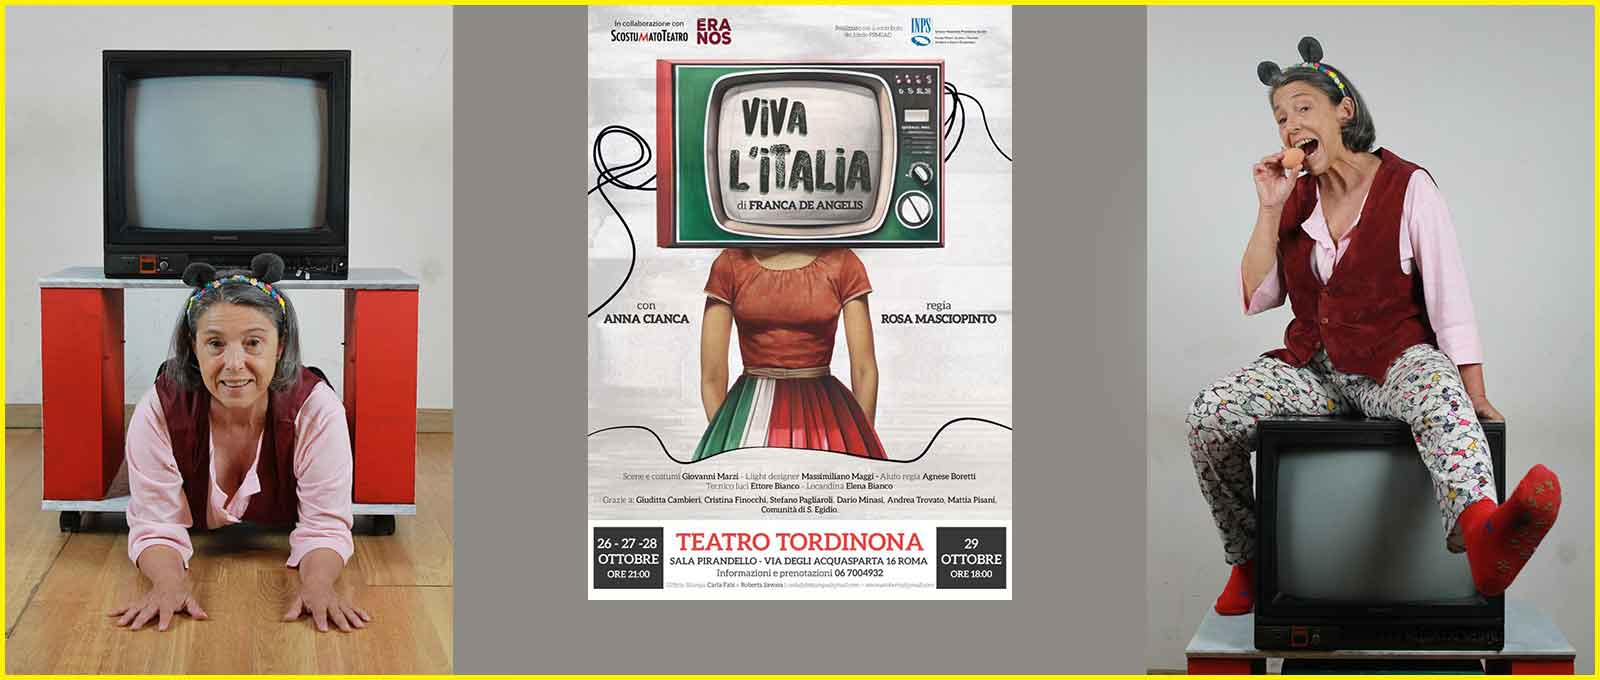 Teatro Tordinona “Viva L’Italia”.